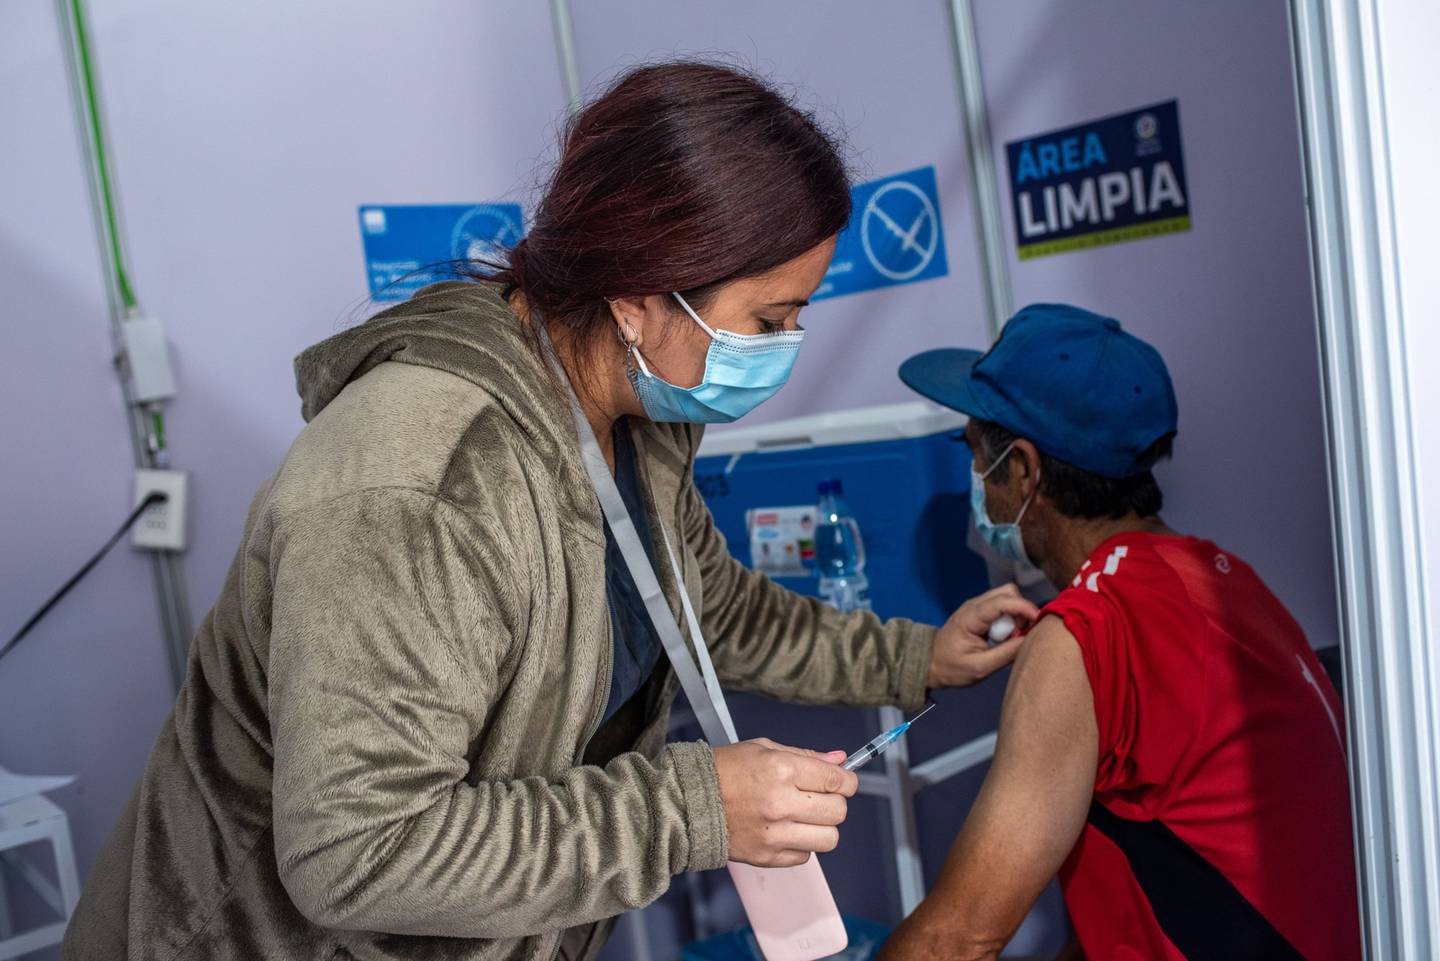 Un trabajador de la salud administra una dosis de una vacuna contra eñ covid-19 en Santiago, Chile.dfd